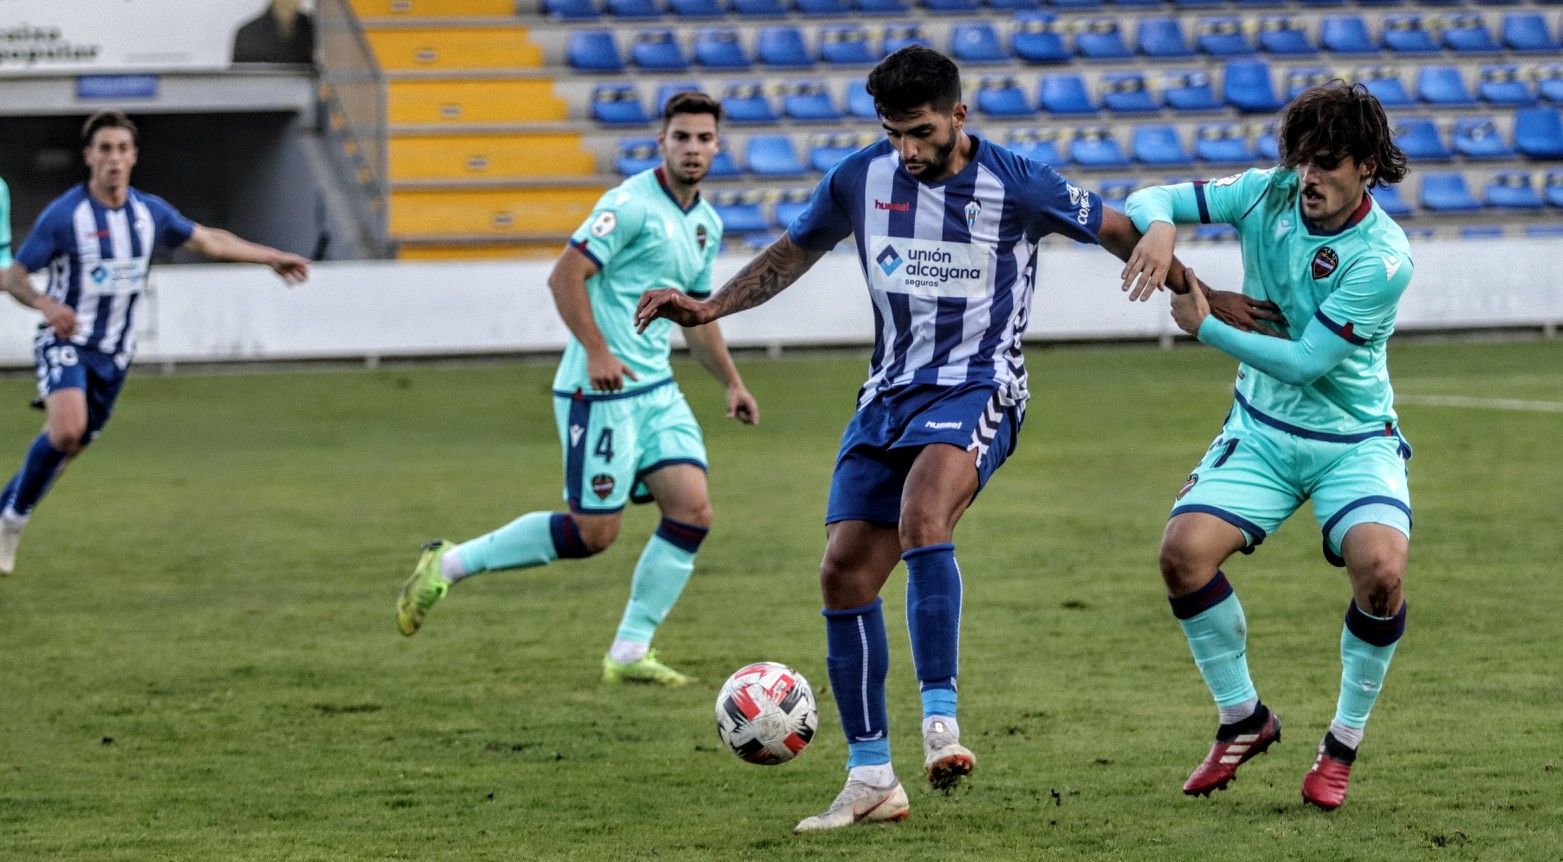 El Alcoyano se anota su primera victoria de la temporada (1-0)